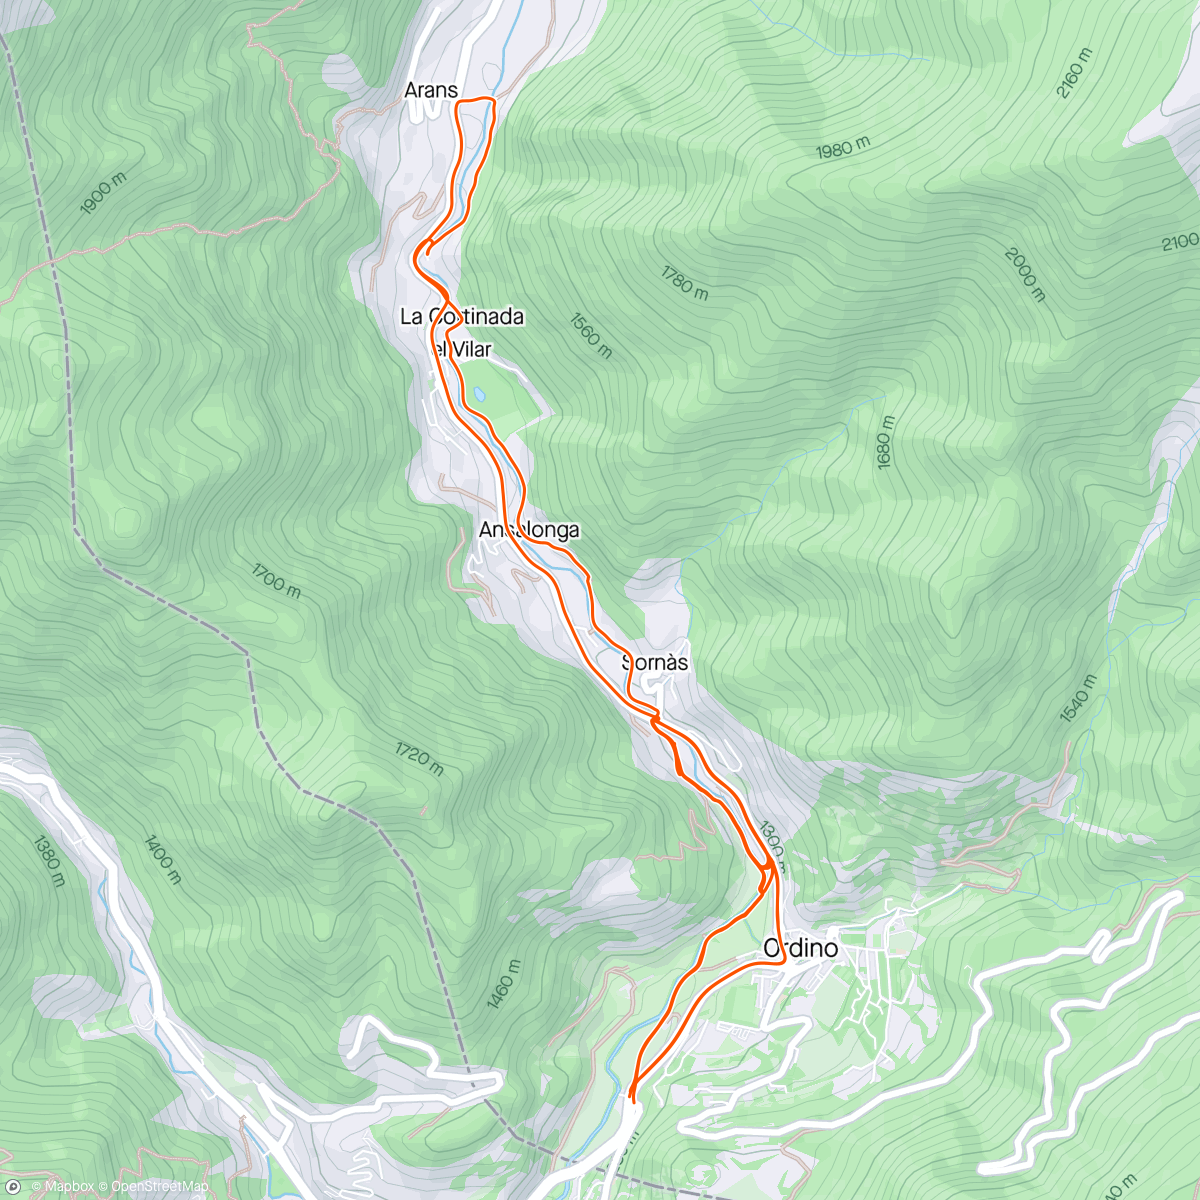 Map of the activity, Escàs, La Massana, Andorra 🇦🇩